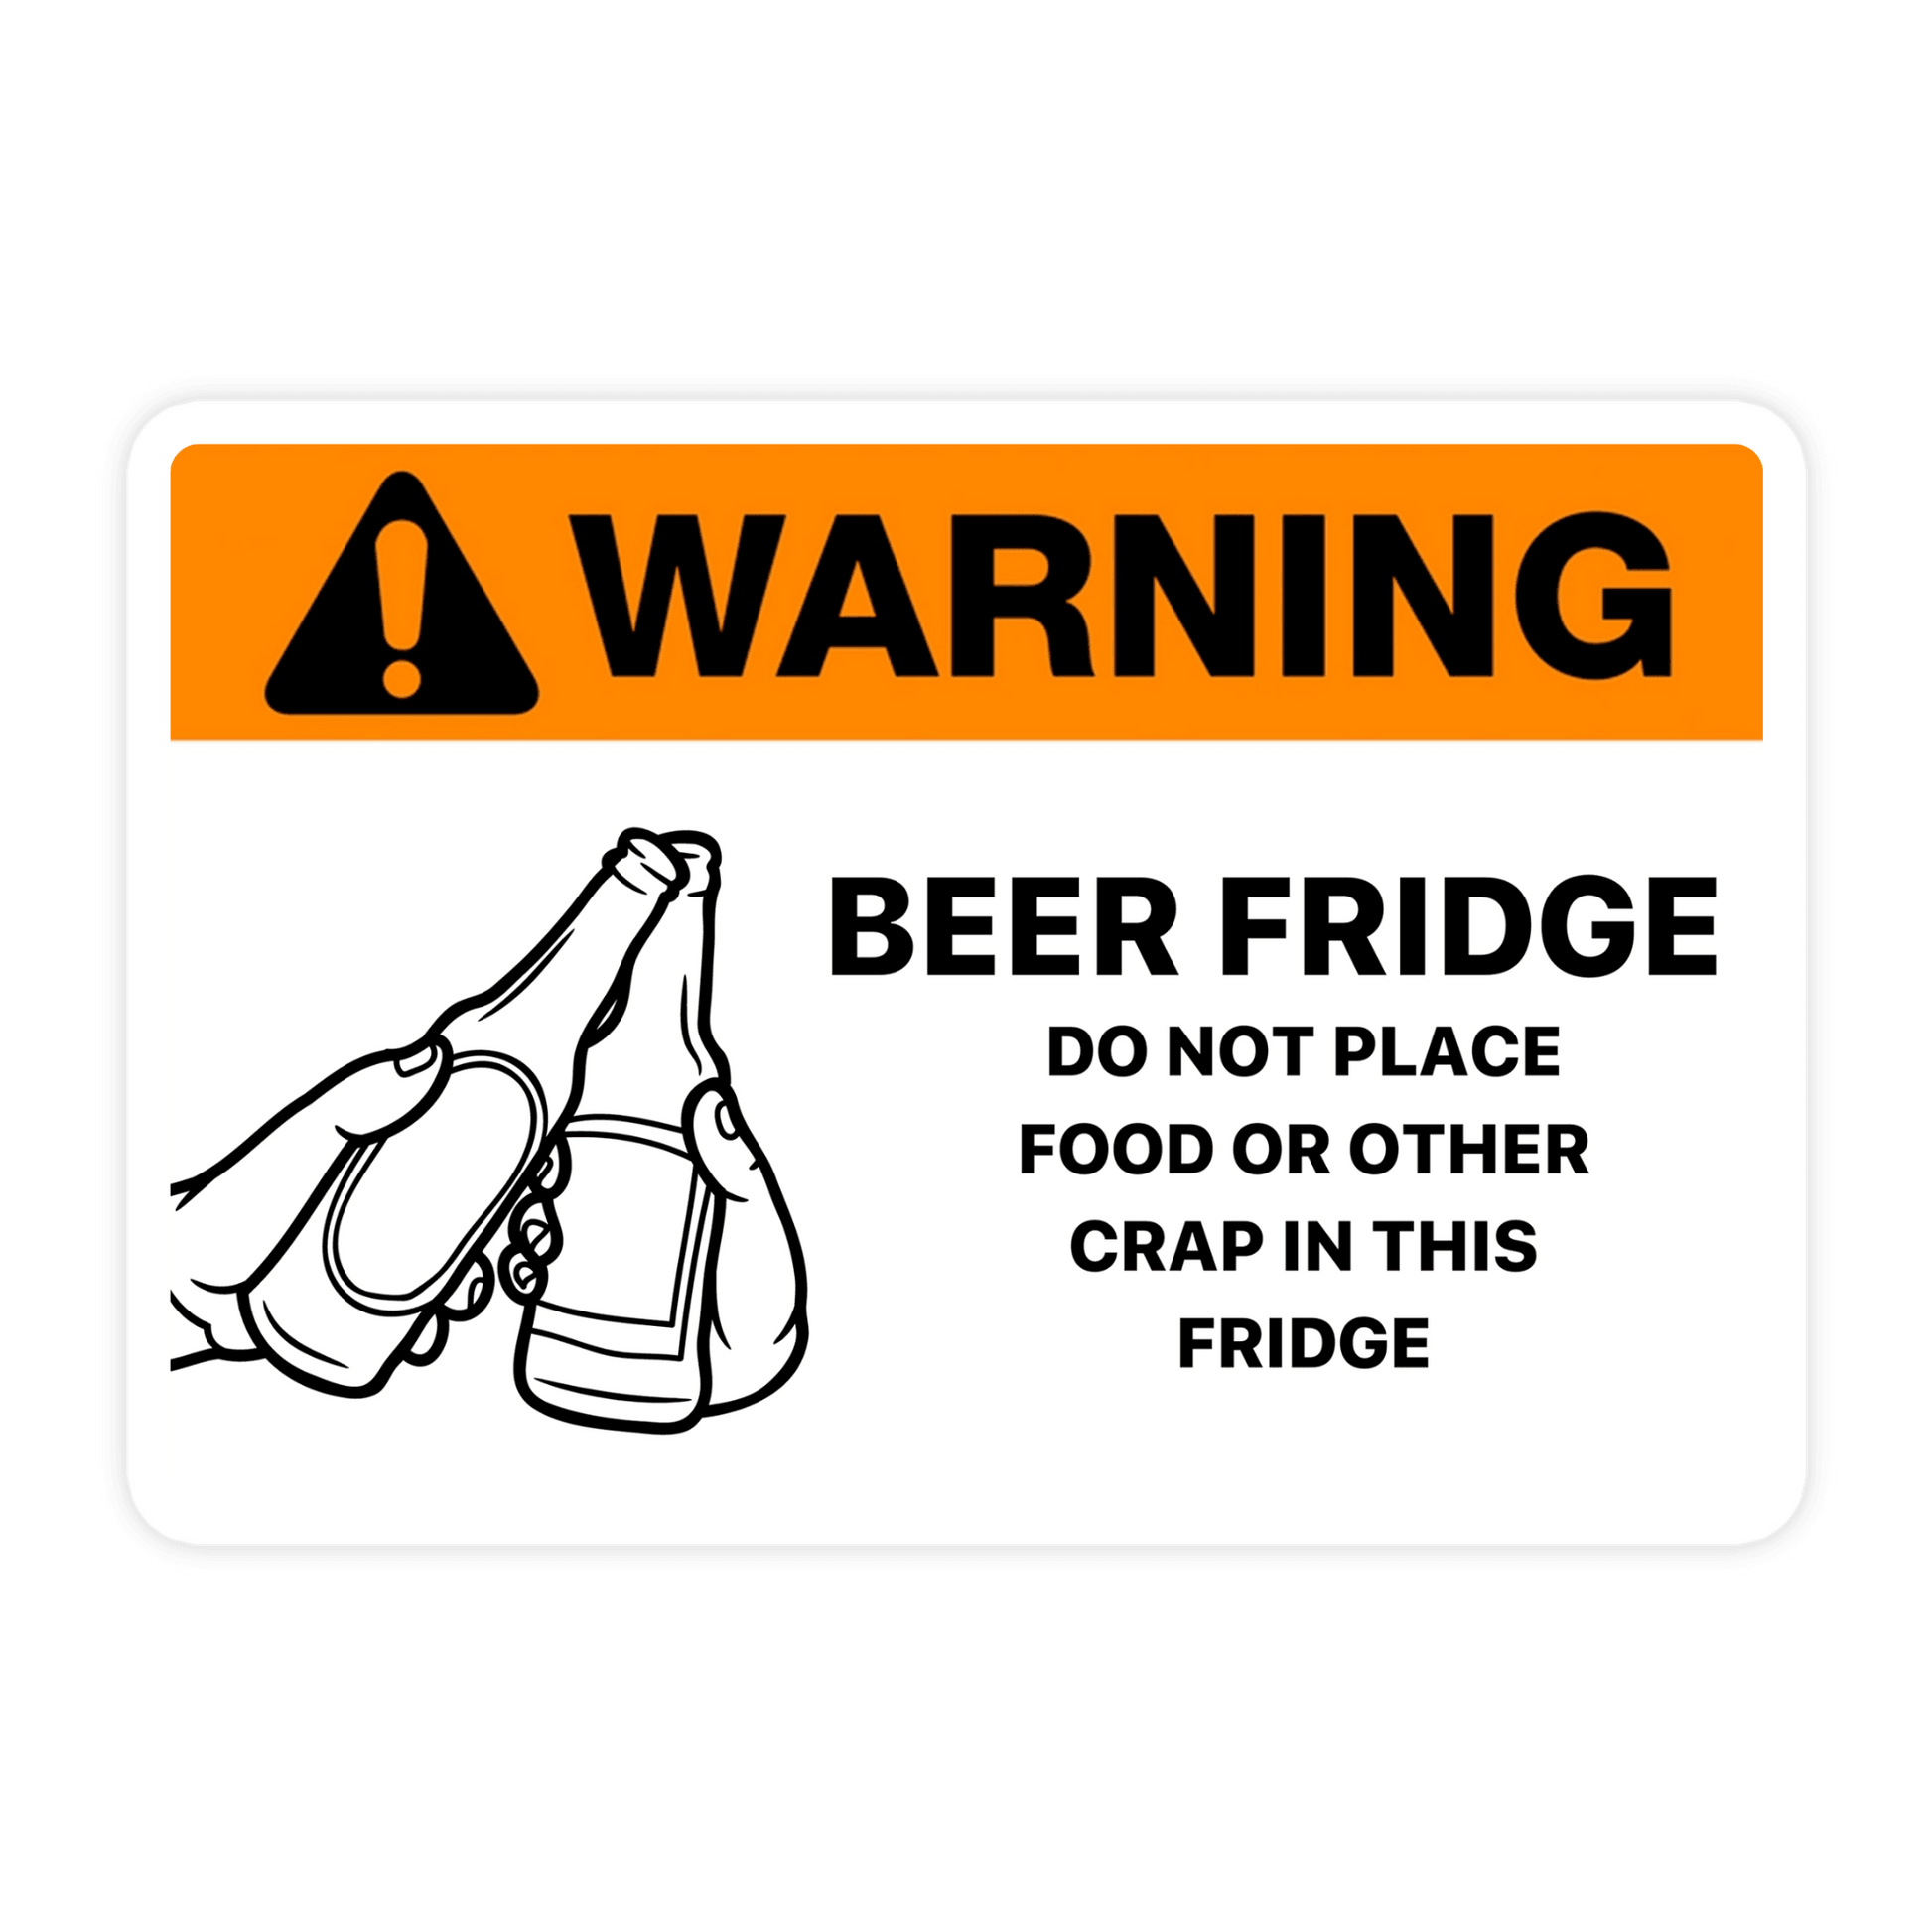 Warning Beer Fridge Caution Sticker - Sticker Bull, white and orange beer fridge caution warning sticker, meme sticker